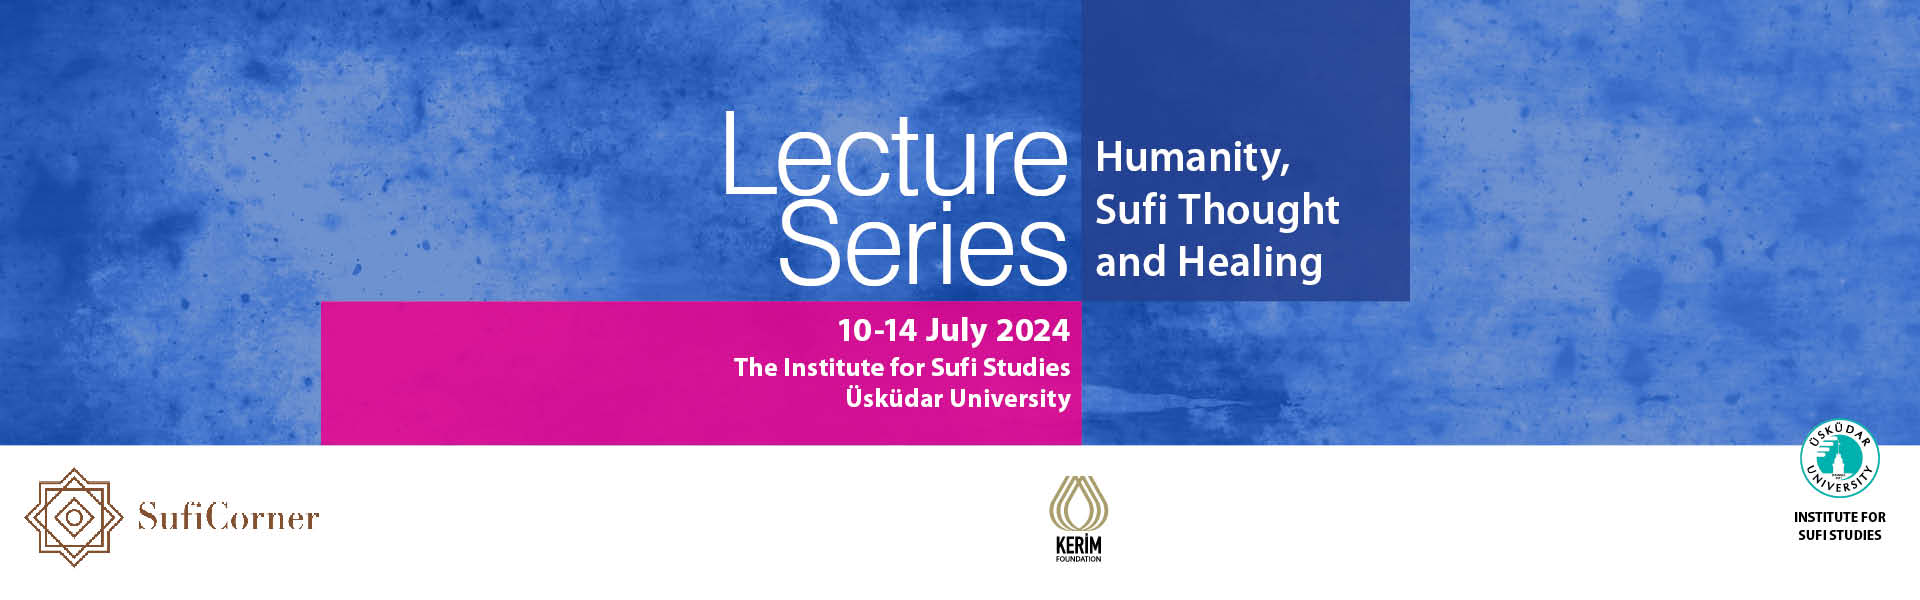 Humanity, Sufi Thought and Healing/İnsan, Tasavvuf Düşüncesi ve Şifa” Başlıklı Konferans